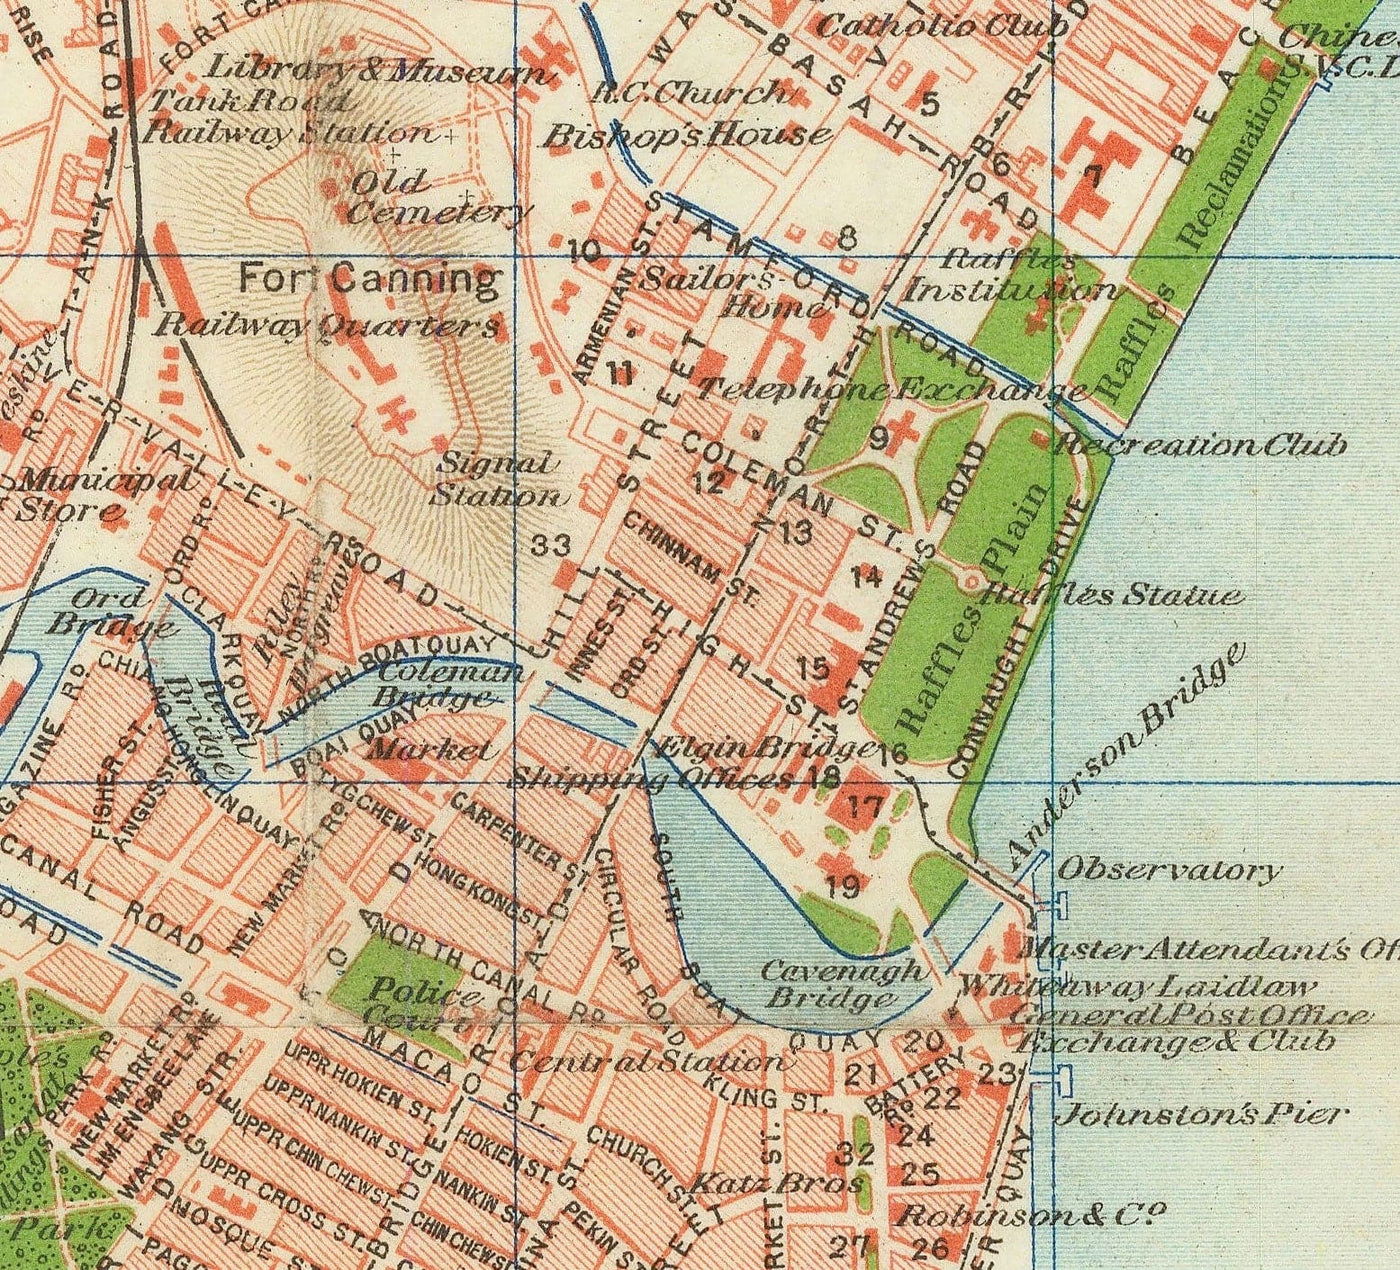 Rare ancienne carte de Singapour, 1917 - Colonie d'empire britannique, Pulau Ujong, Jardins botaniques, Marina, Bay